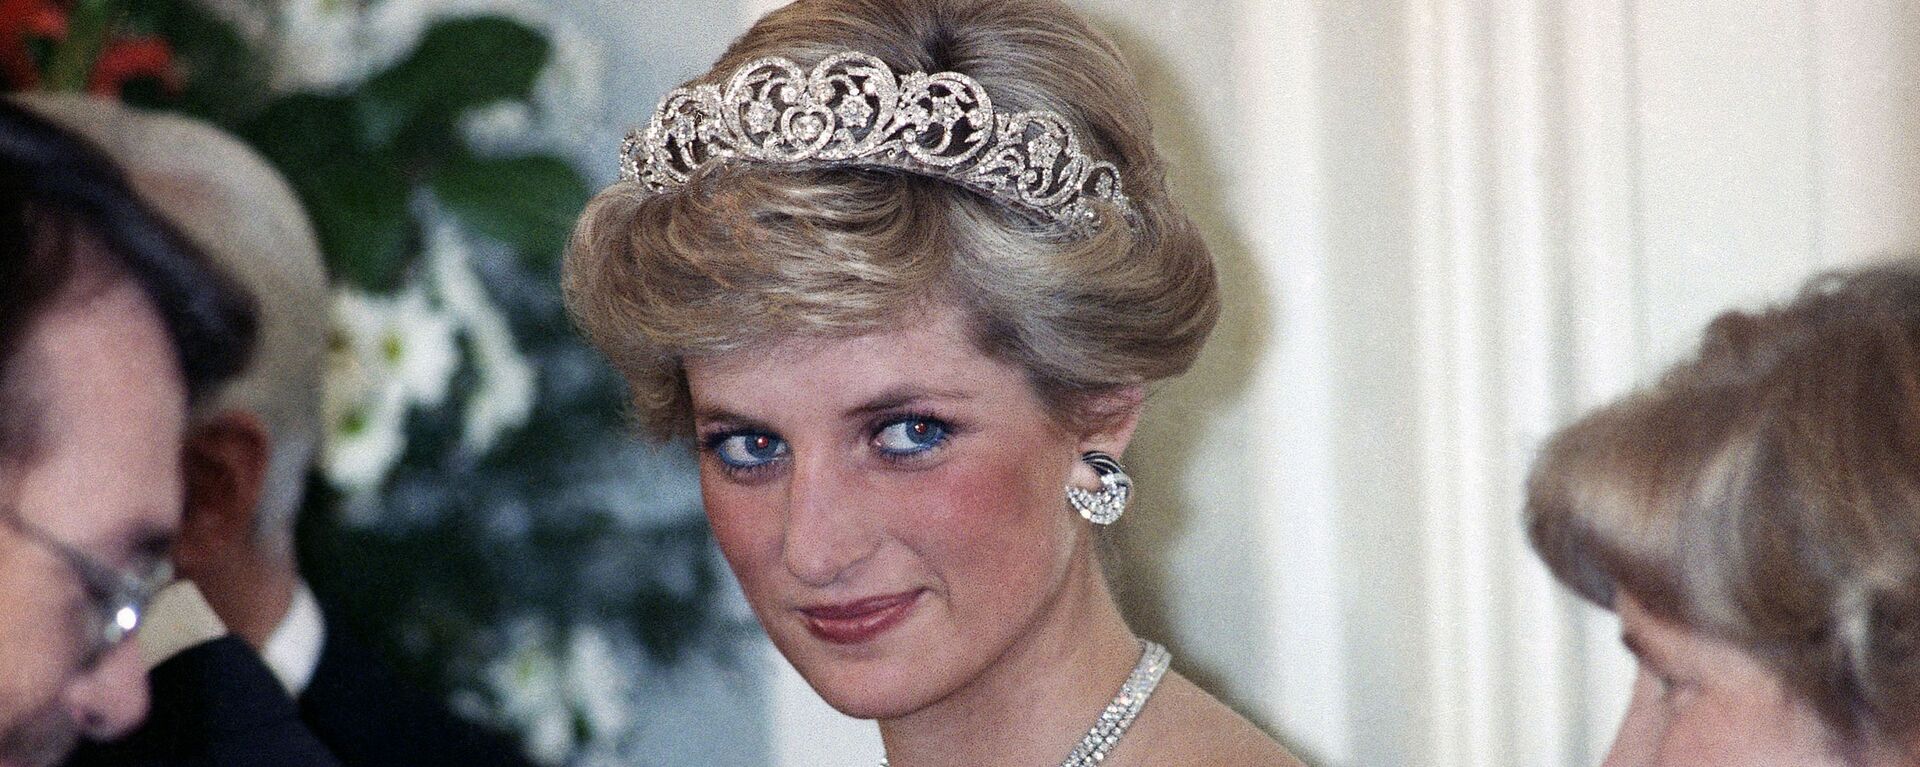 Prenses Diana, Bonn'da Batı Almanya Cumhurbaşkanı Richard von Weizsacker tarafından Britanya kraliyet ailesinin şerefine verilen akşam şöleninde. 1987. - Sputnik Türkiye, 1920, 30.03.2021